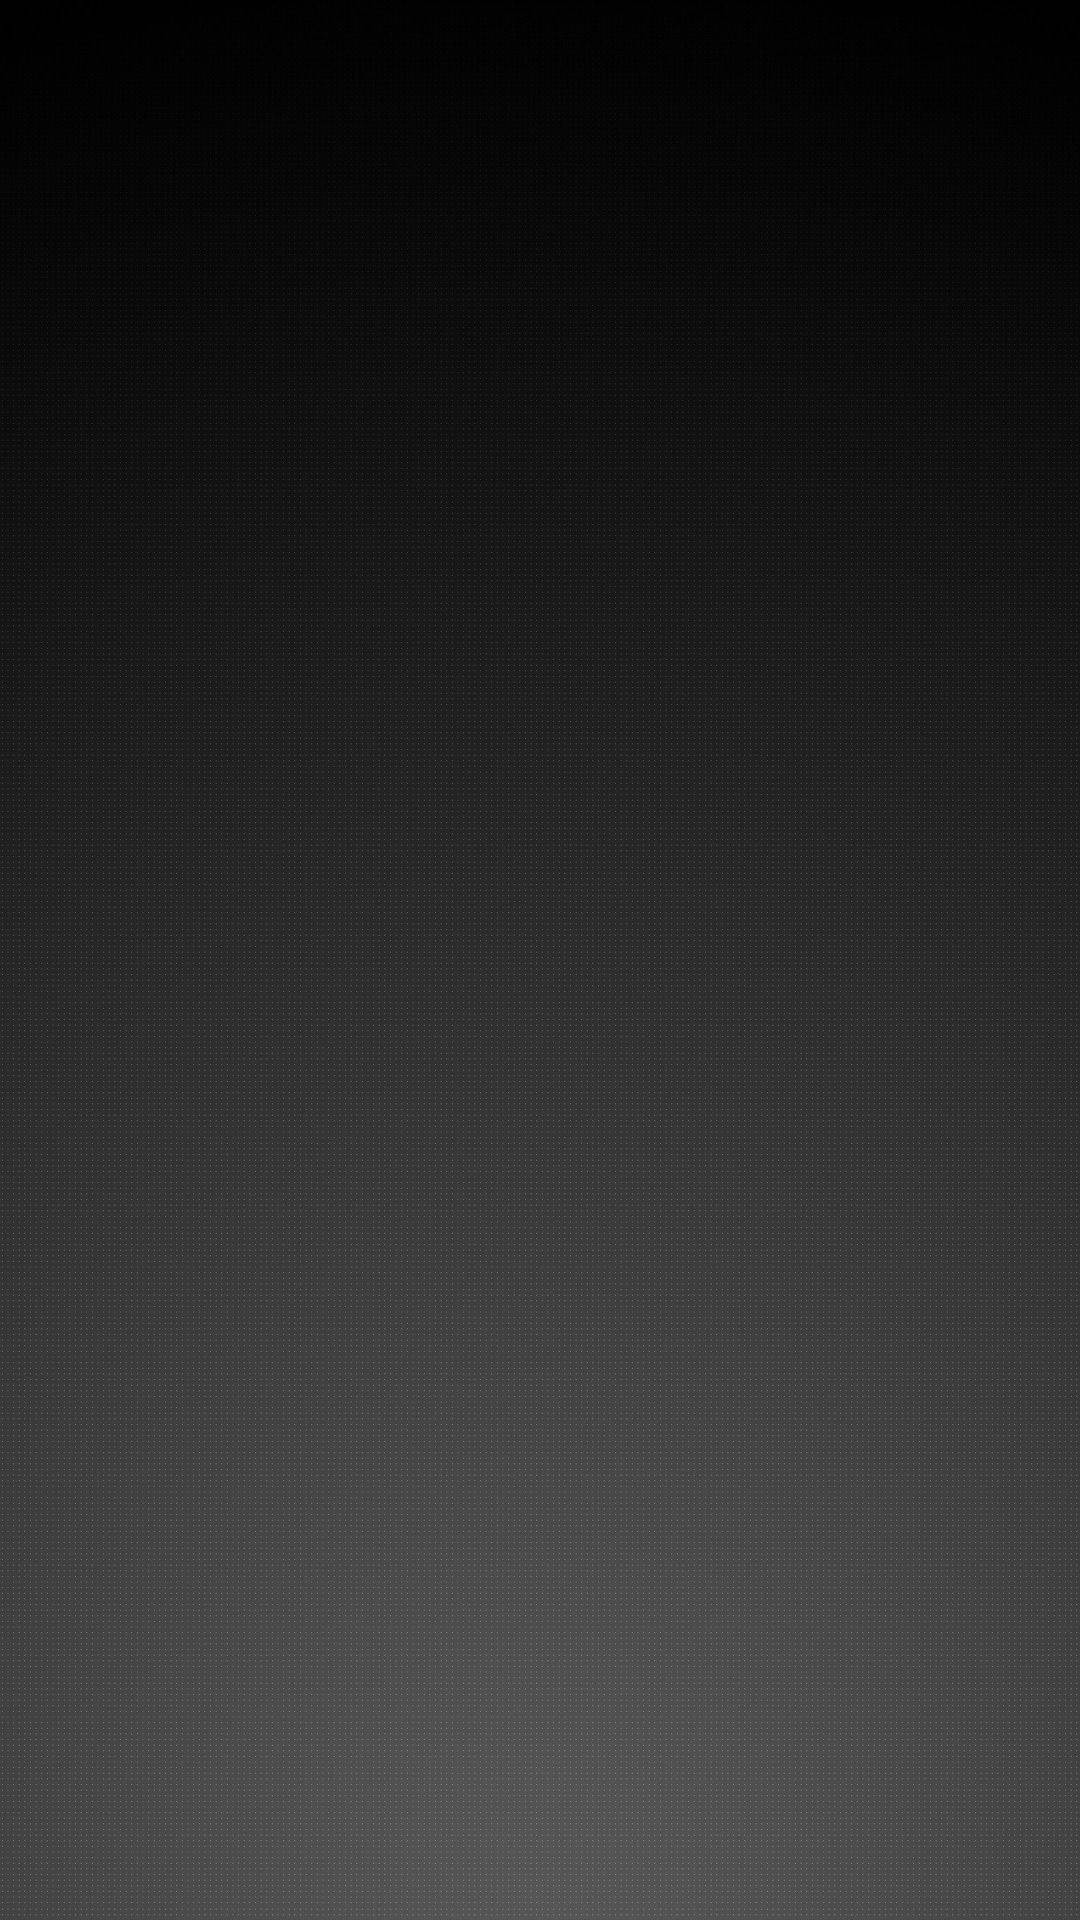 Grisiphone En Degradado Estético Oscuro. Fondo de pantalla